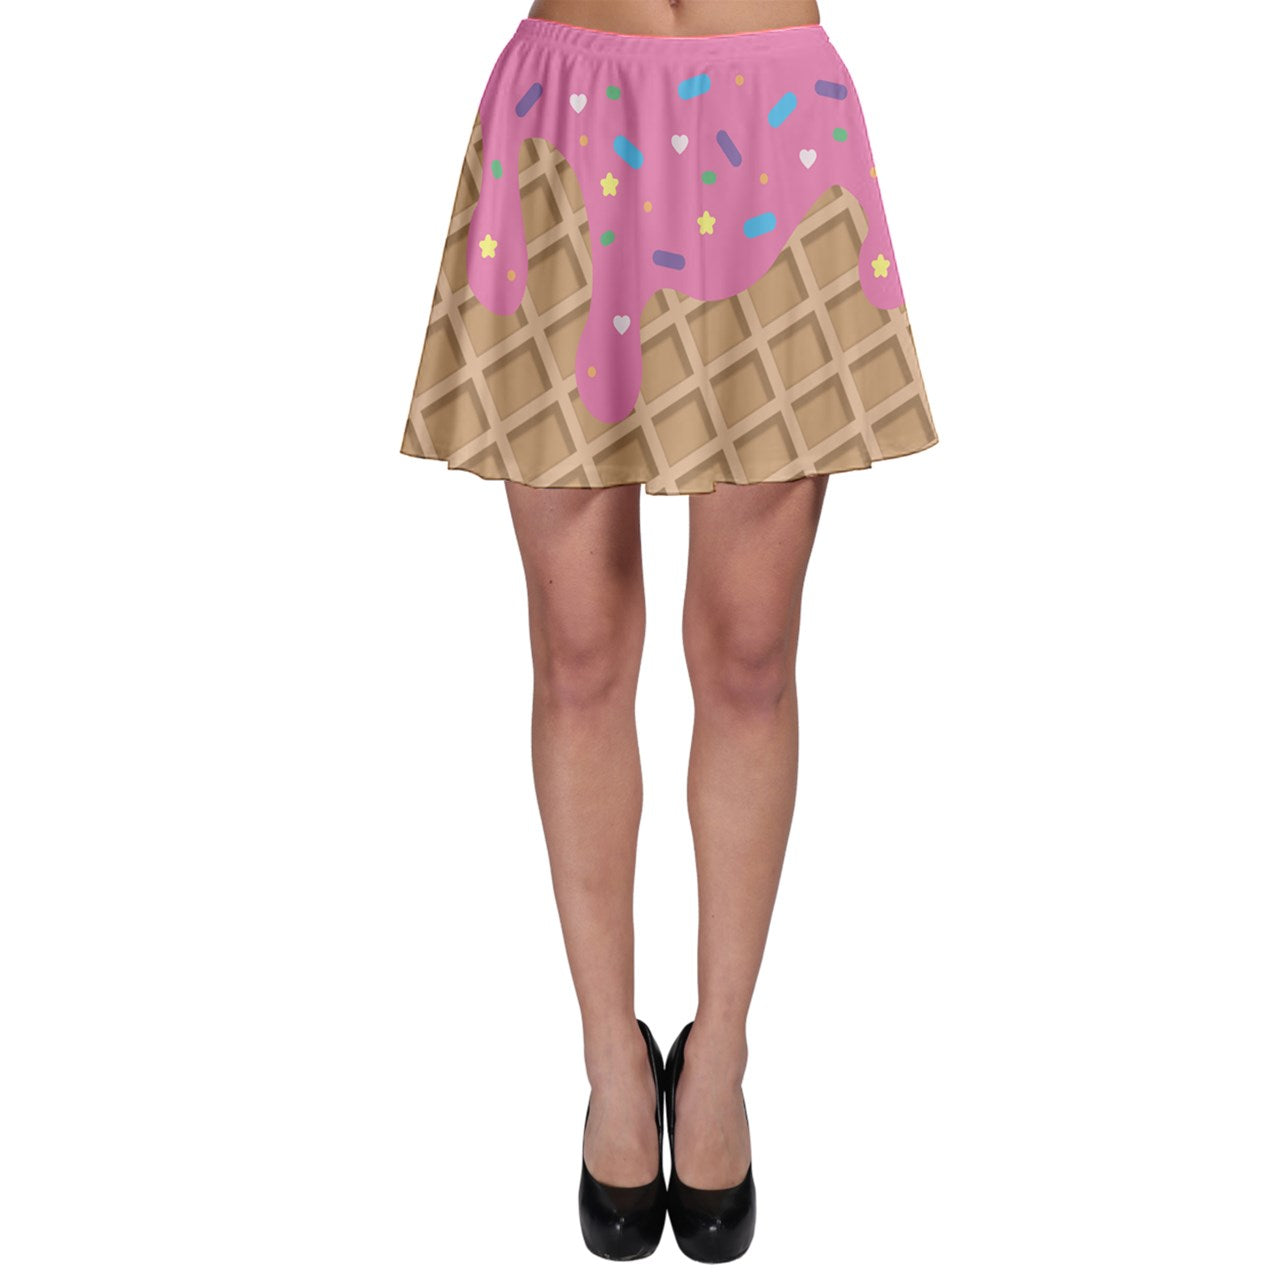 Melting Ice Cream Skater Skirt